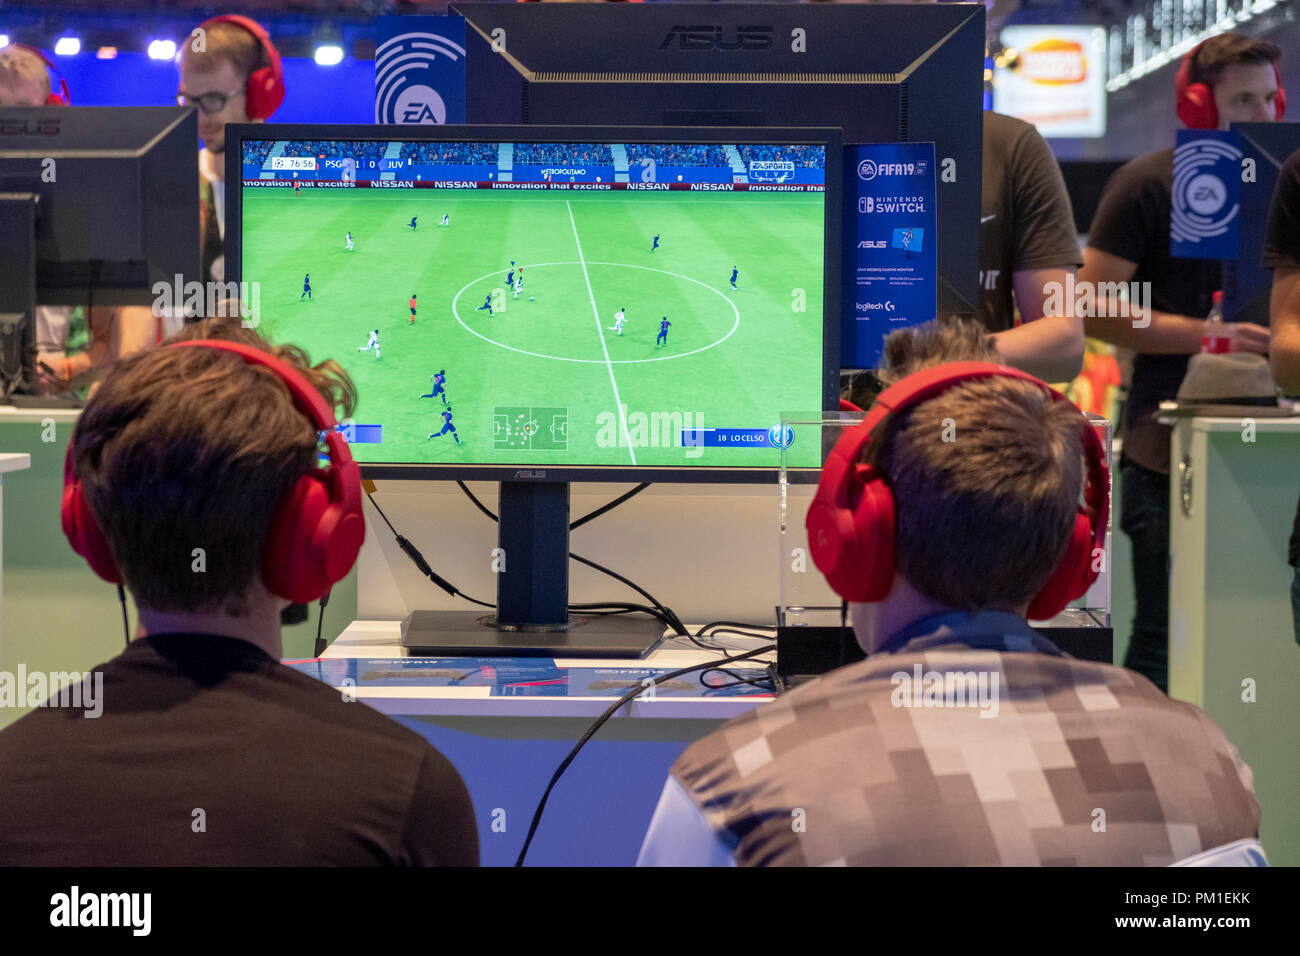 Kšlnmesse, recinto ferial de Colonia Alemania, 24.8.2018, los jugadores juegan el nuevo FIFA19 el video juego de fútbol más grande del mundo de los videojuegos y juegos de ordenador, la feria